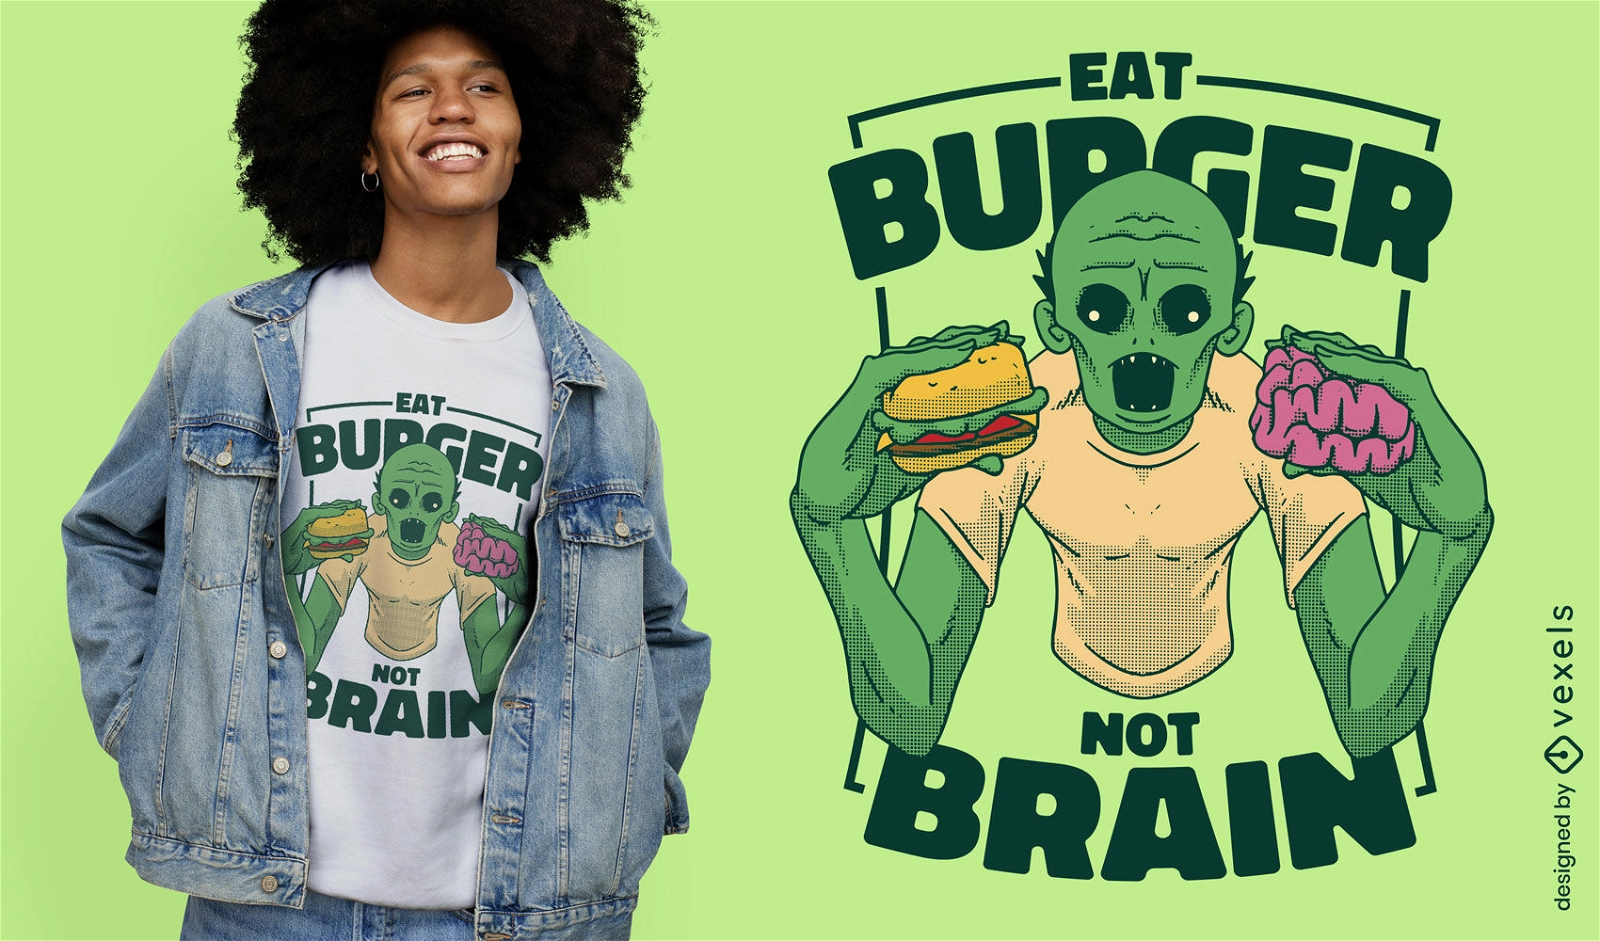 Dise?o de camiseta zombie comiendo hamburguesa y cerebro